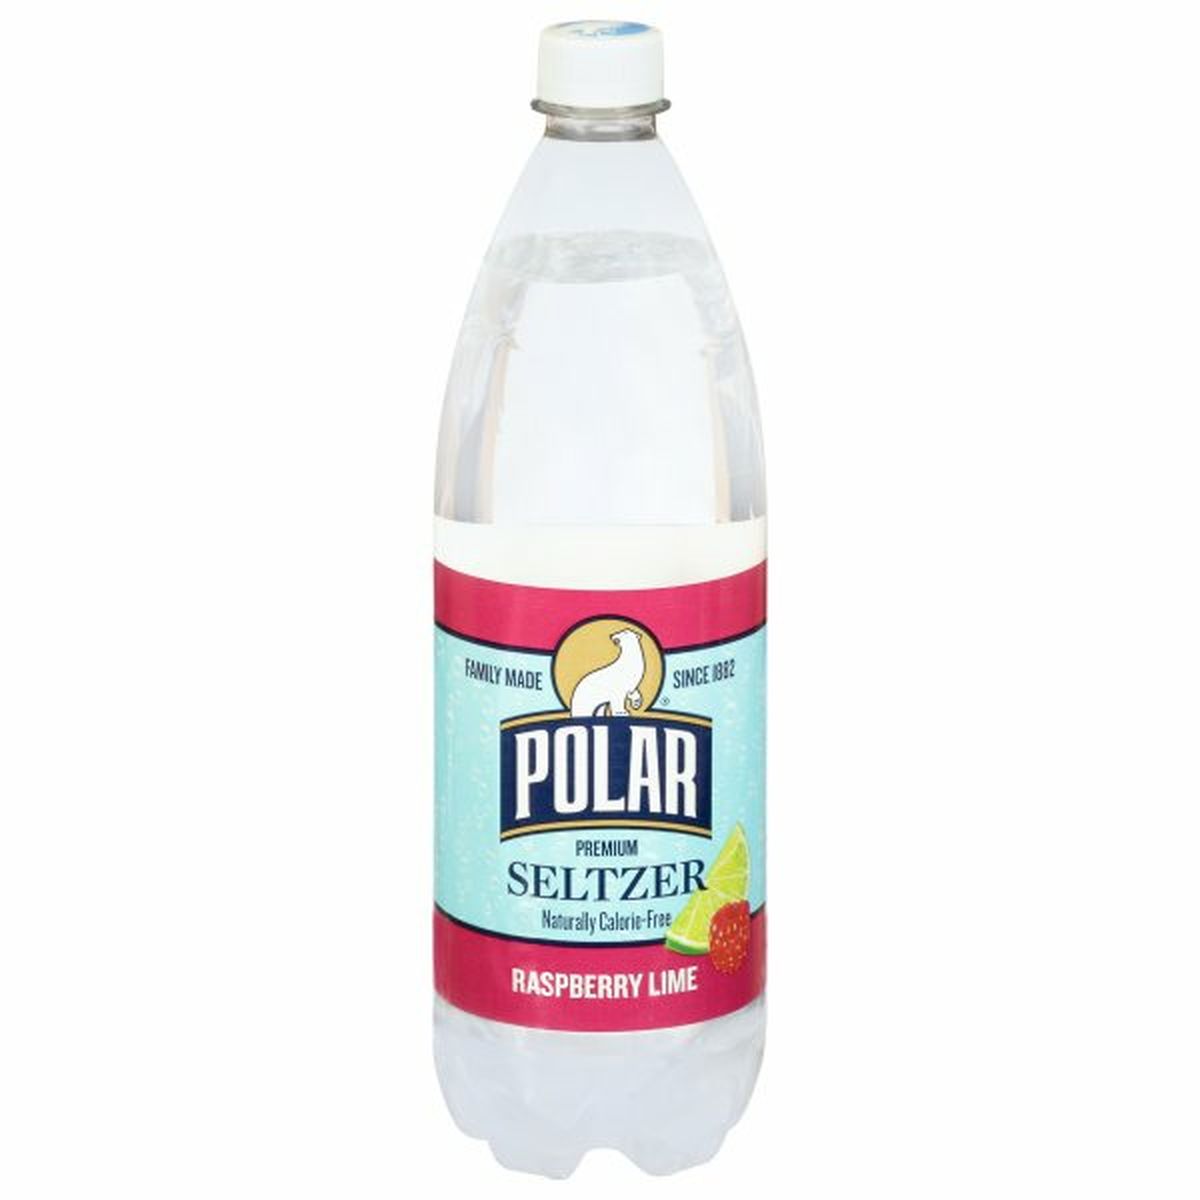 Calories in Polar Seltzer, Premium, Raspberry Lime